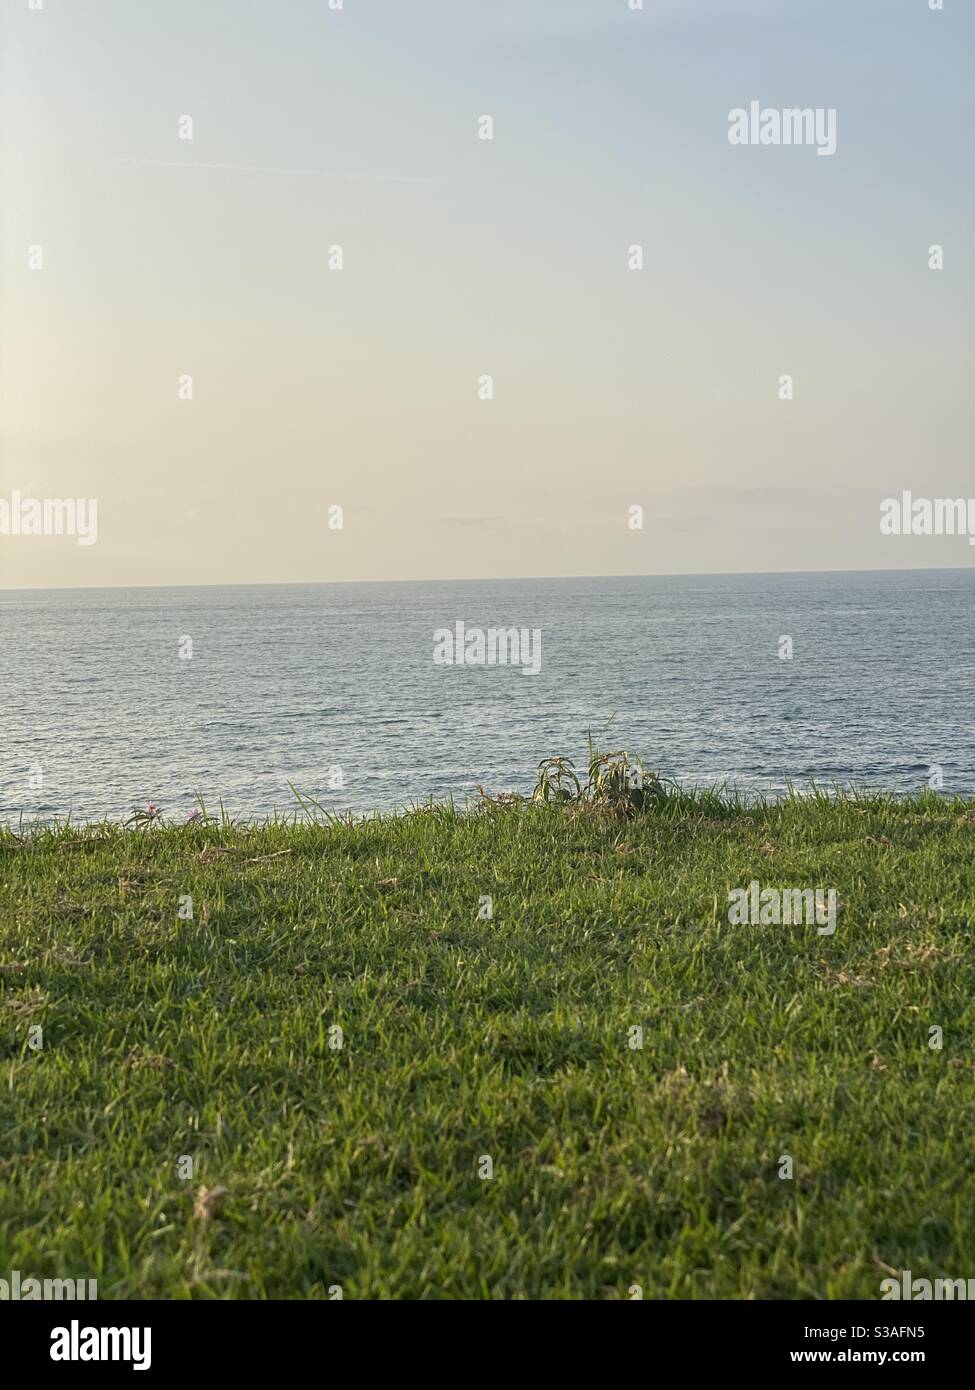 Spiaggia, Oceano, calma, relax, serenità, amore, cielo blu, erba, meditazione, potere, verde Foto Stock